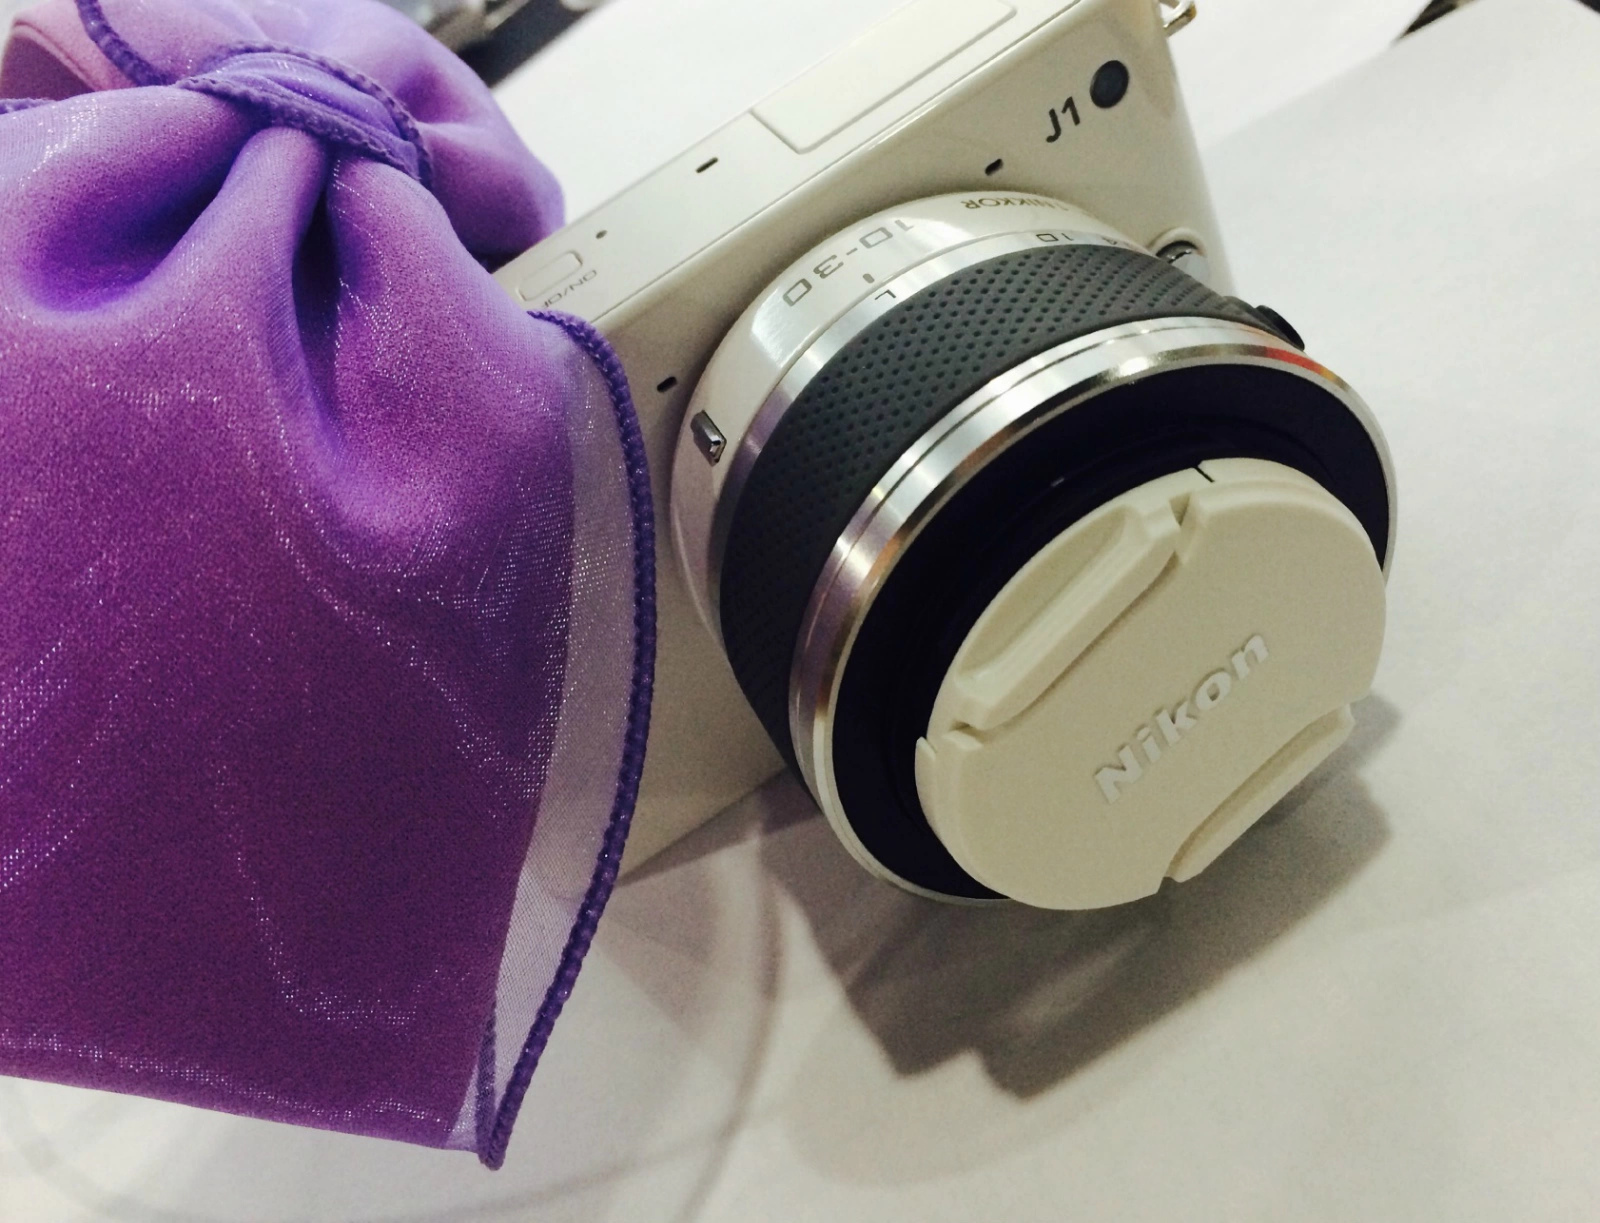 微单相机买什么好 尼康J1经典画质重庆仅售17